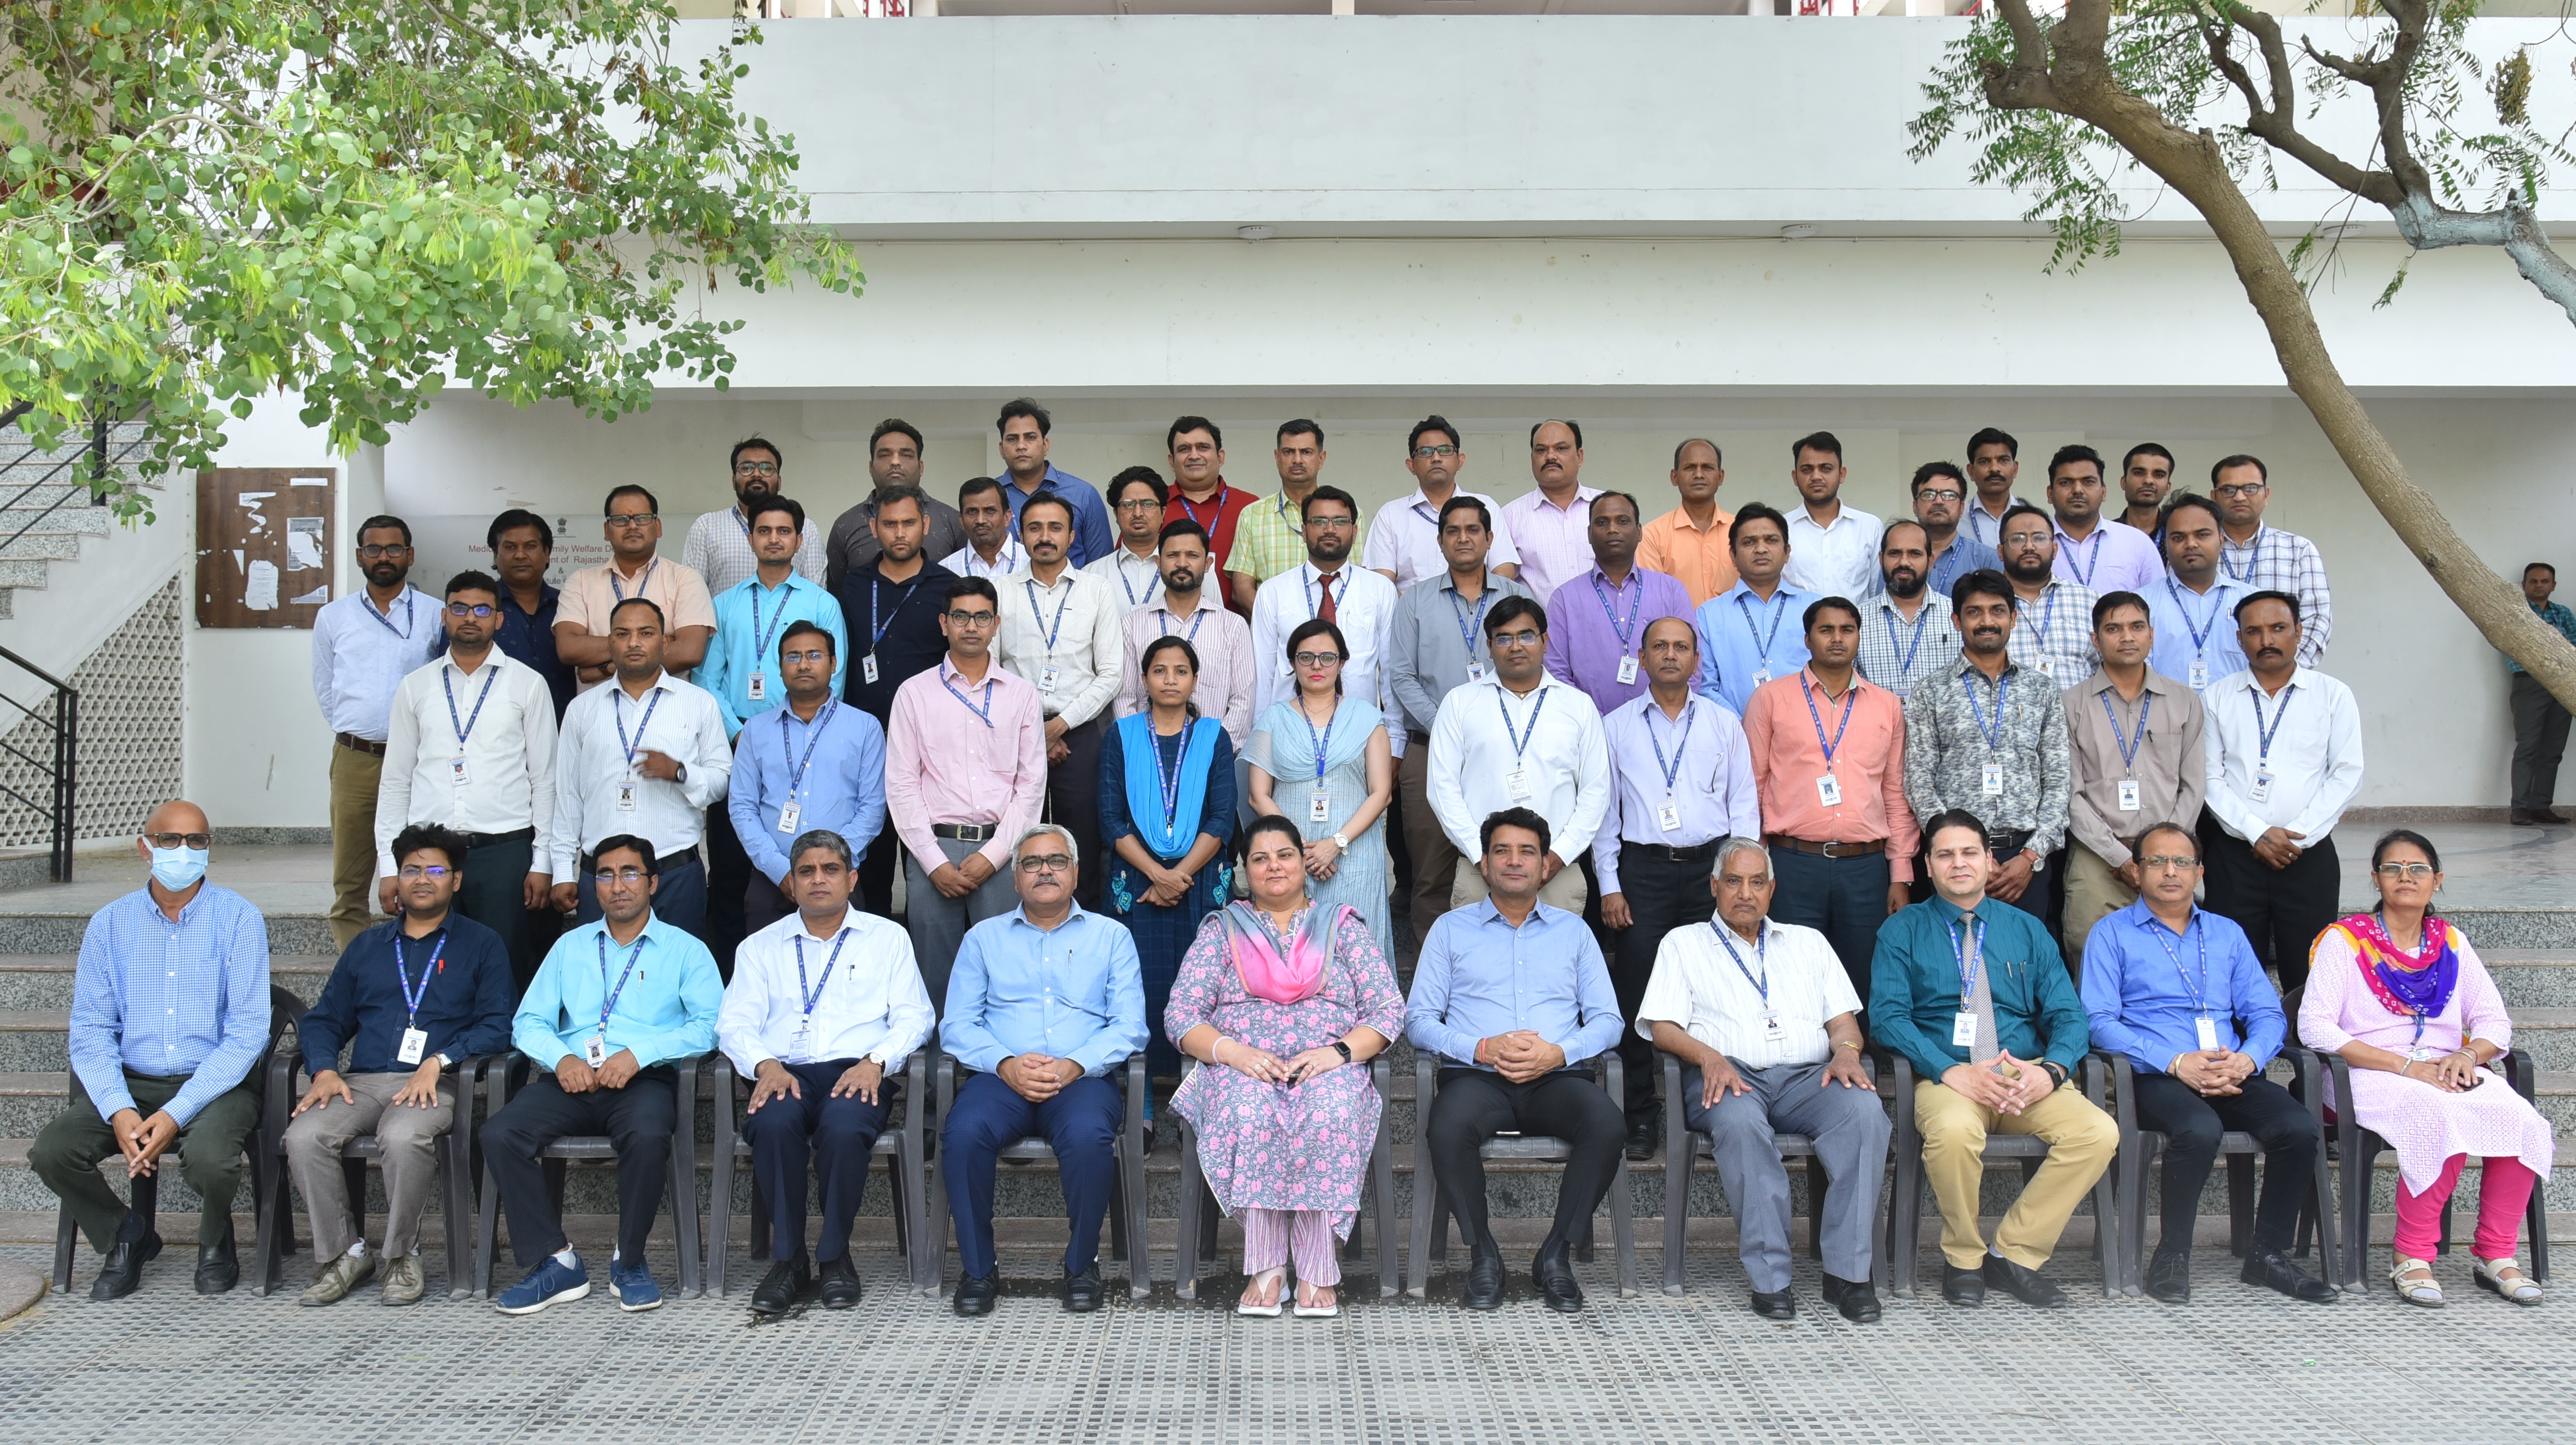 Mechanical Engineering Association, IIT Bombay